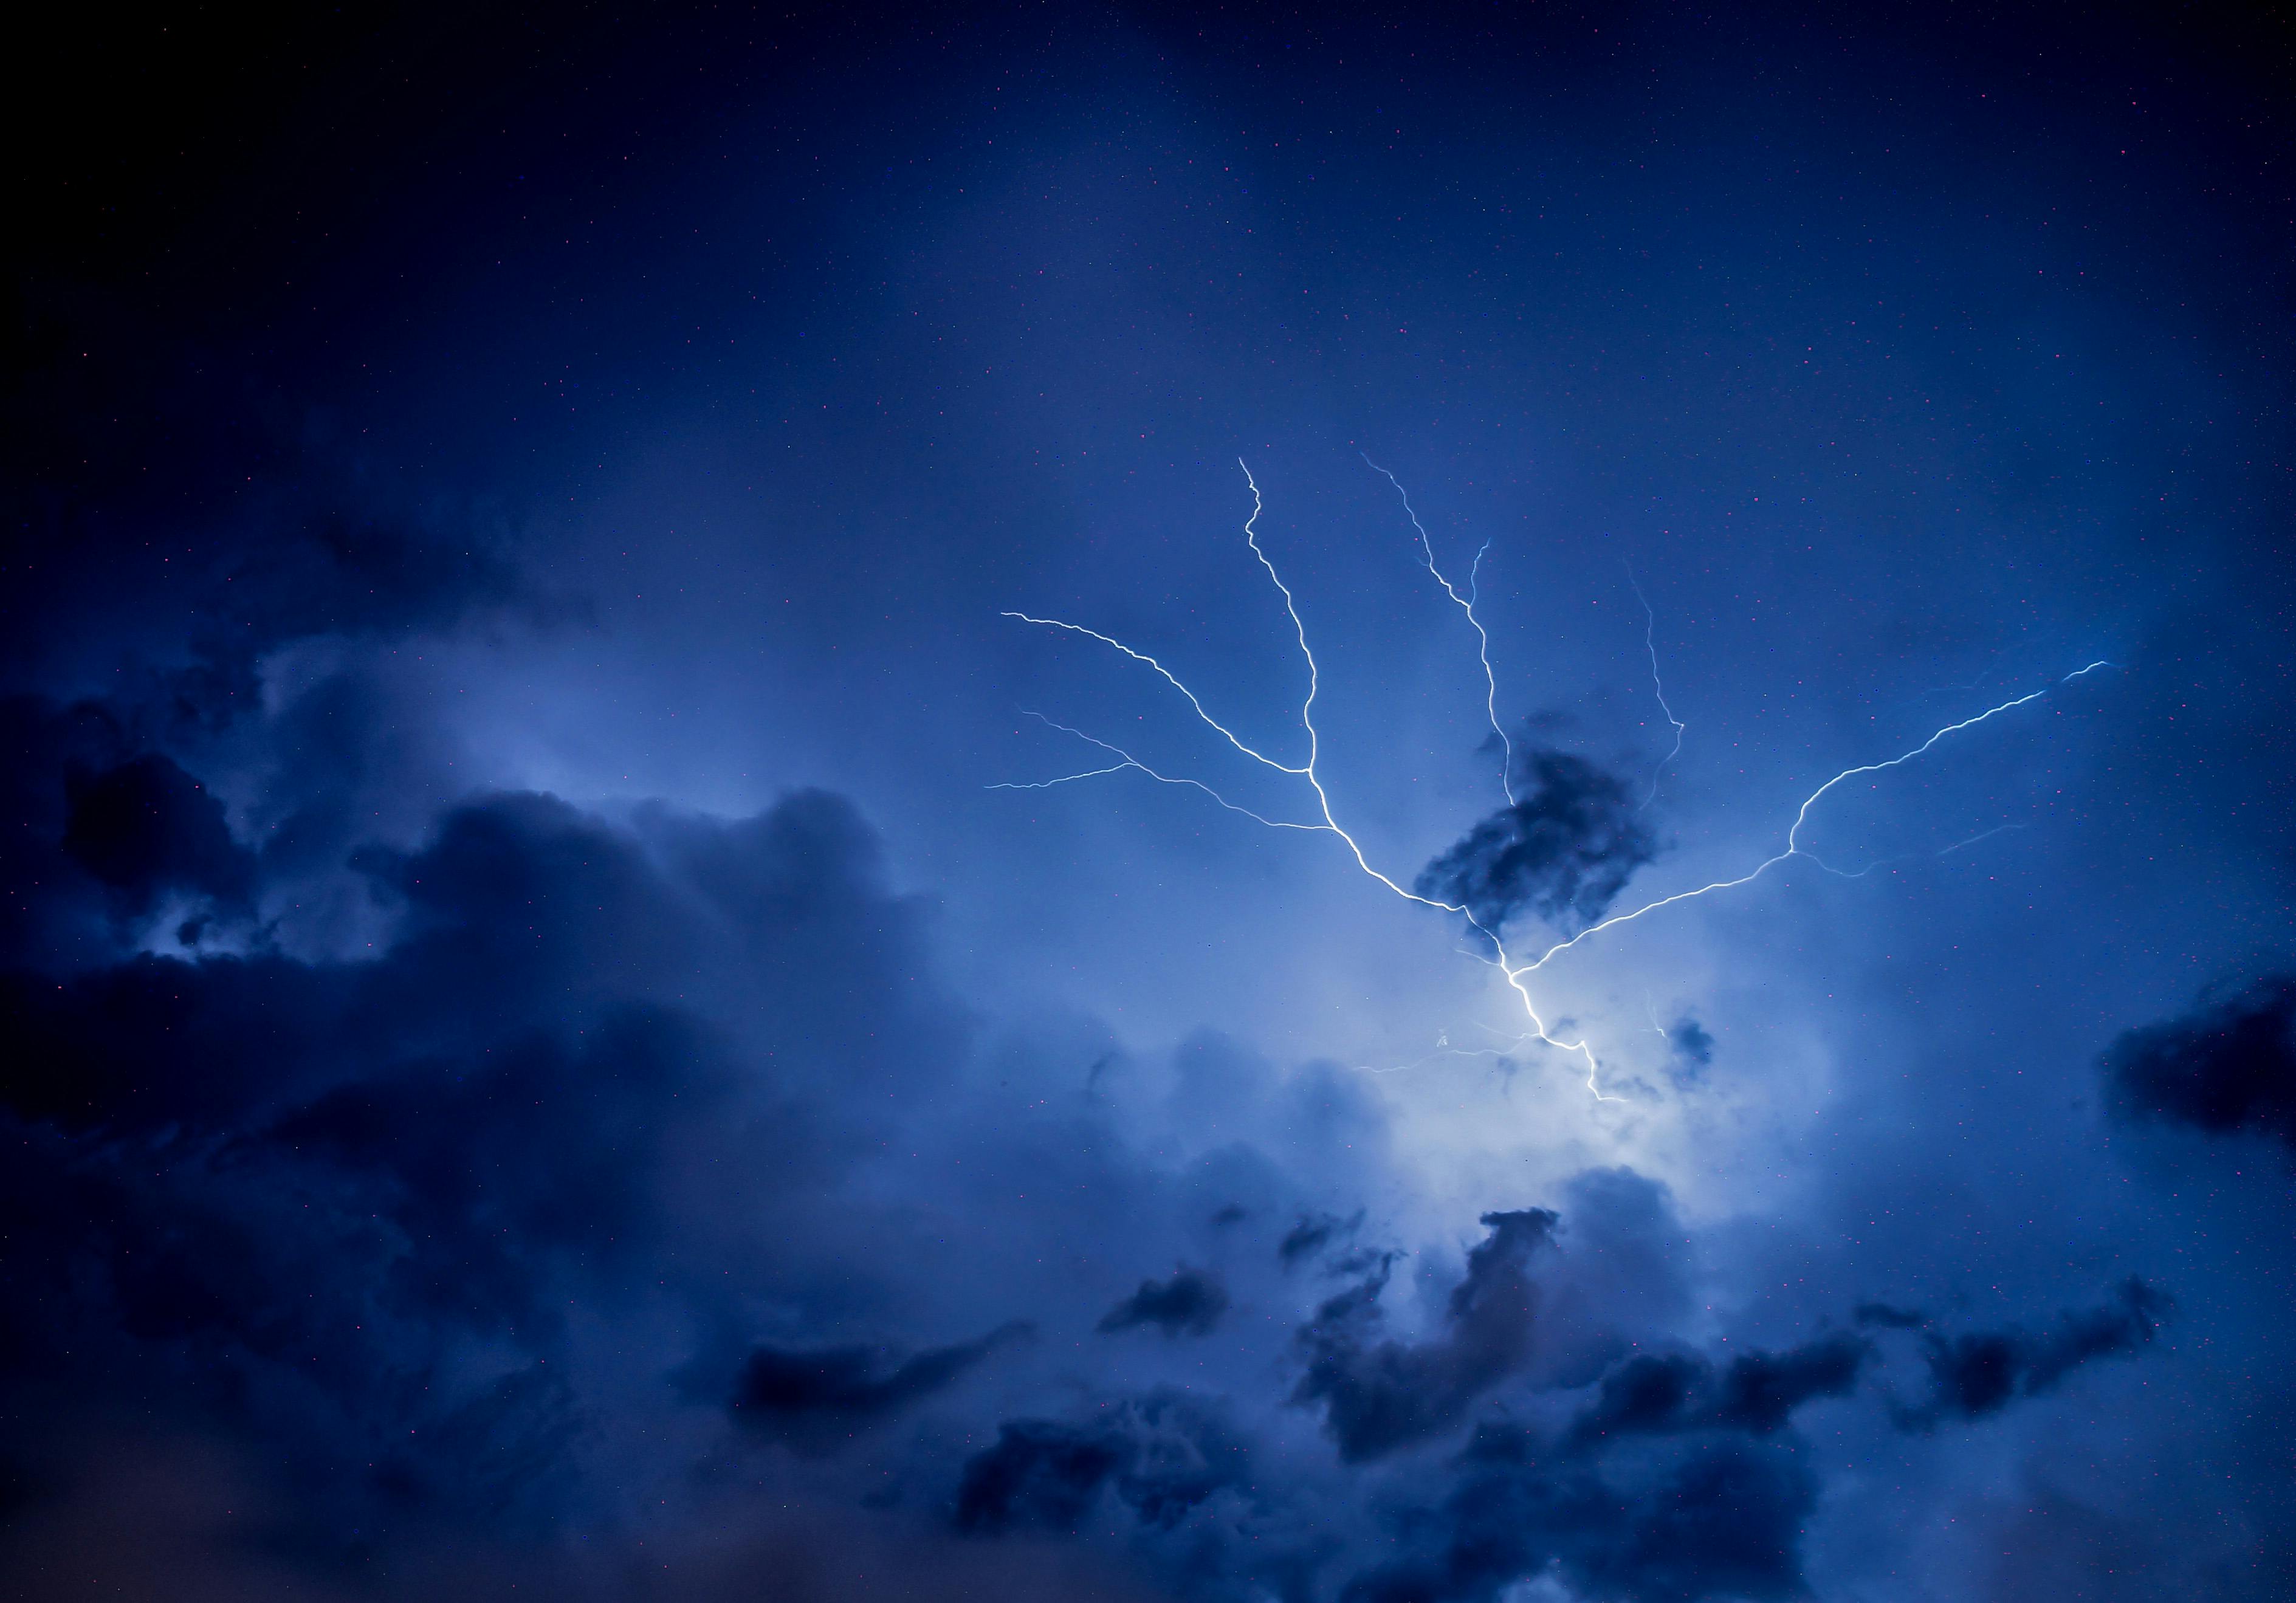 Download A shot of an eyecatching lightning strike in a night sky Wallpaper   Wallpaperscom